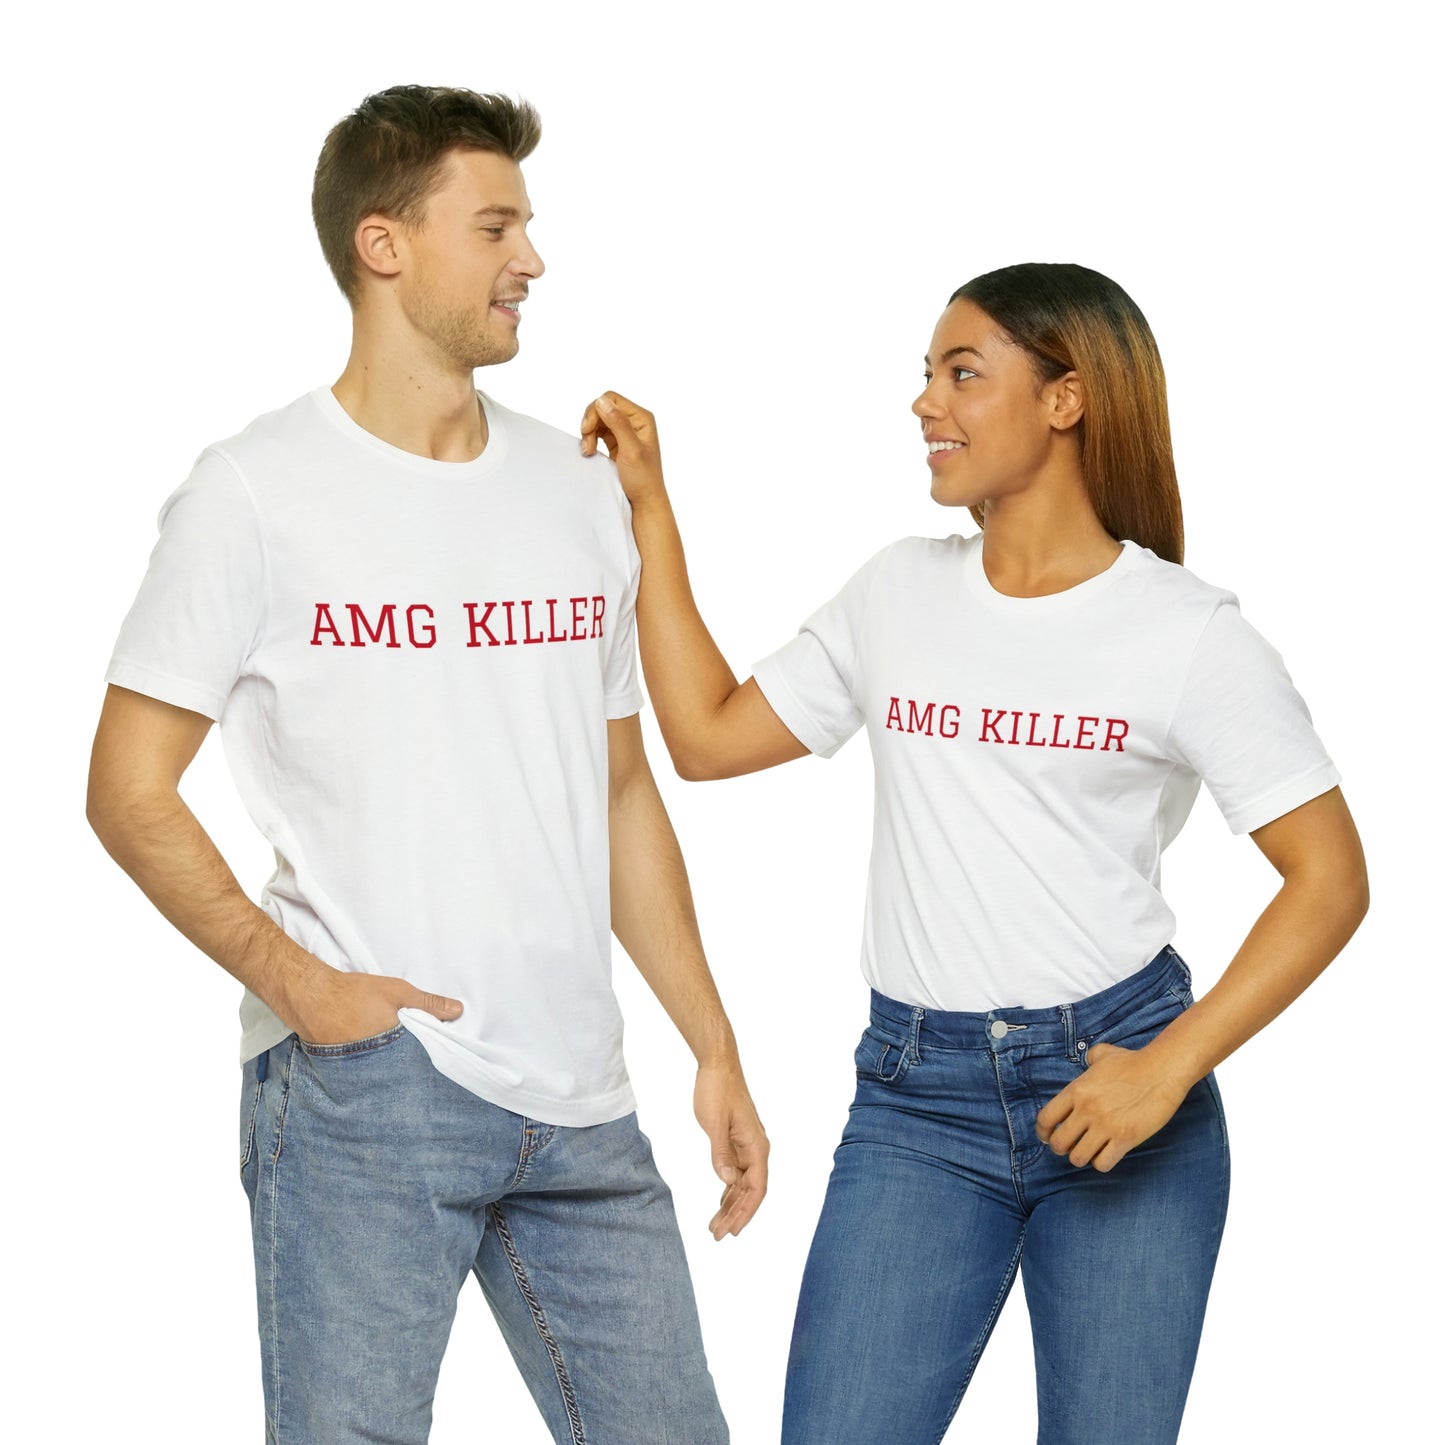 AMG Killer t-shirt